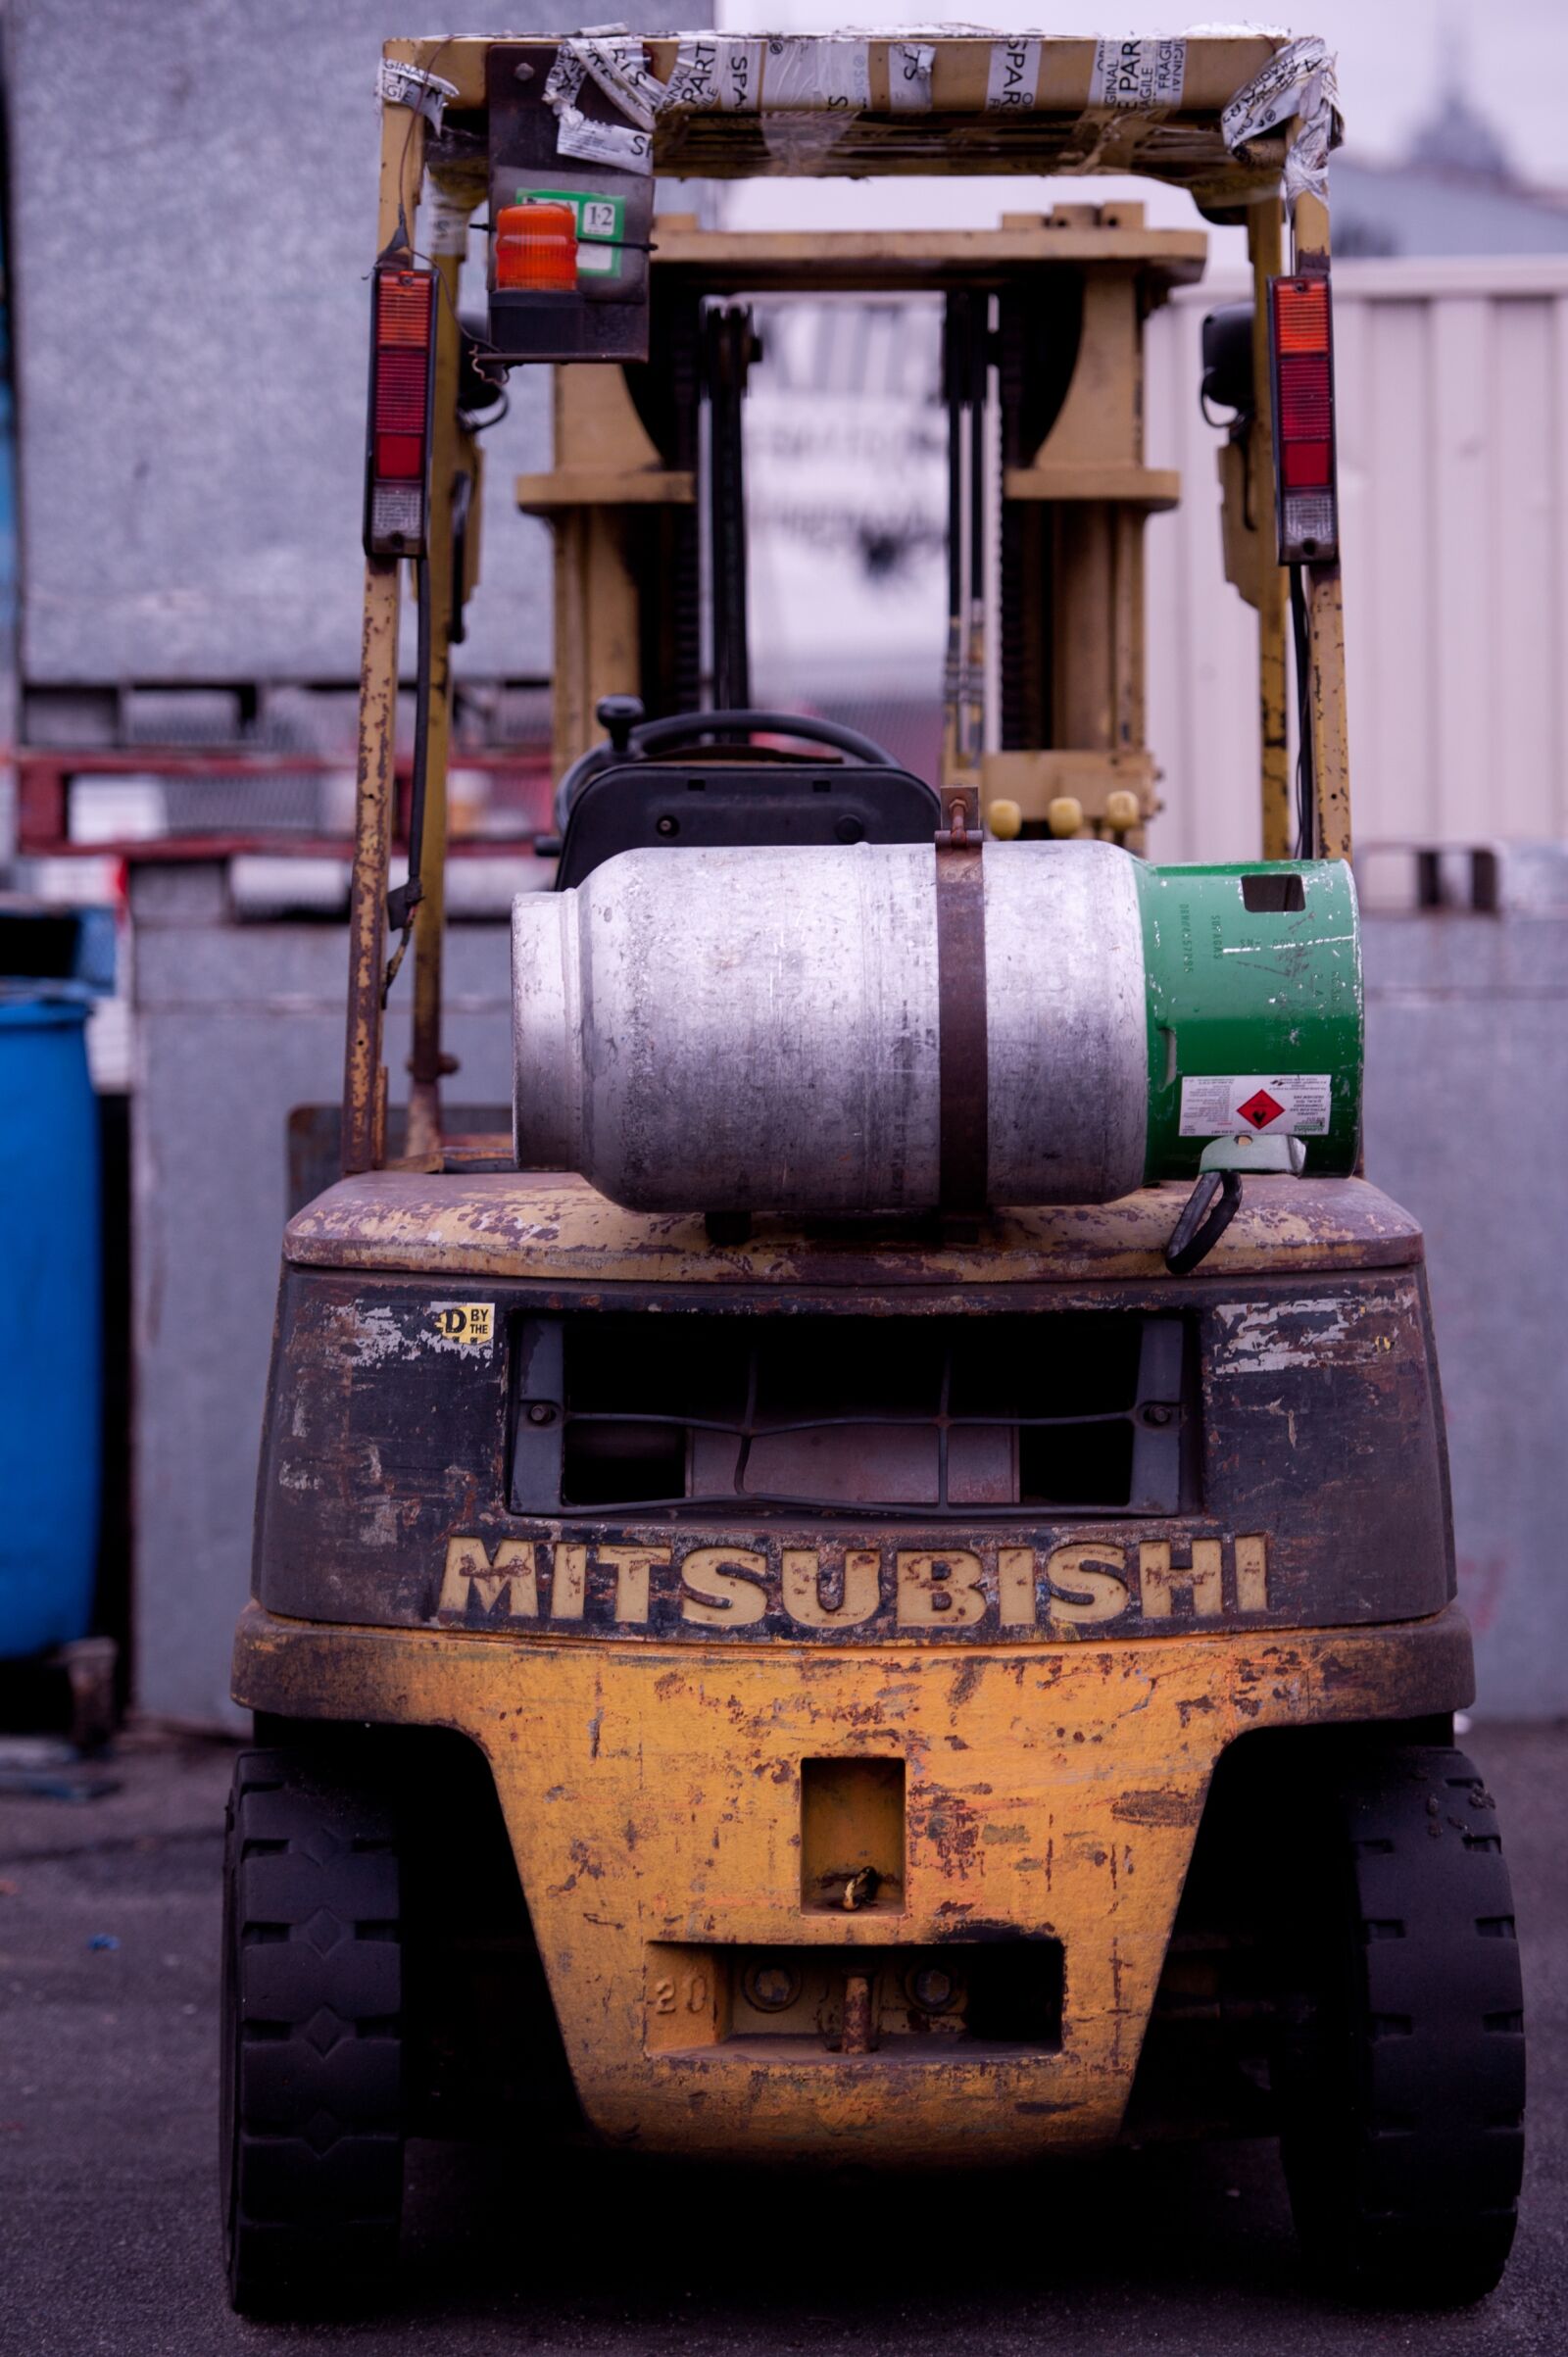 Nikon D700 sample photo. Forklift, mitsubishi forklift, fork photography